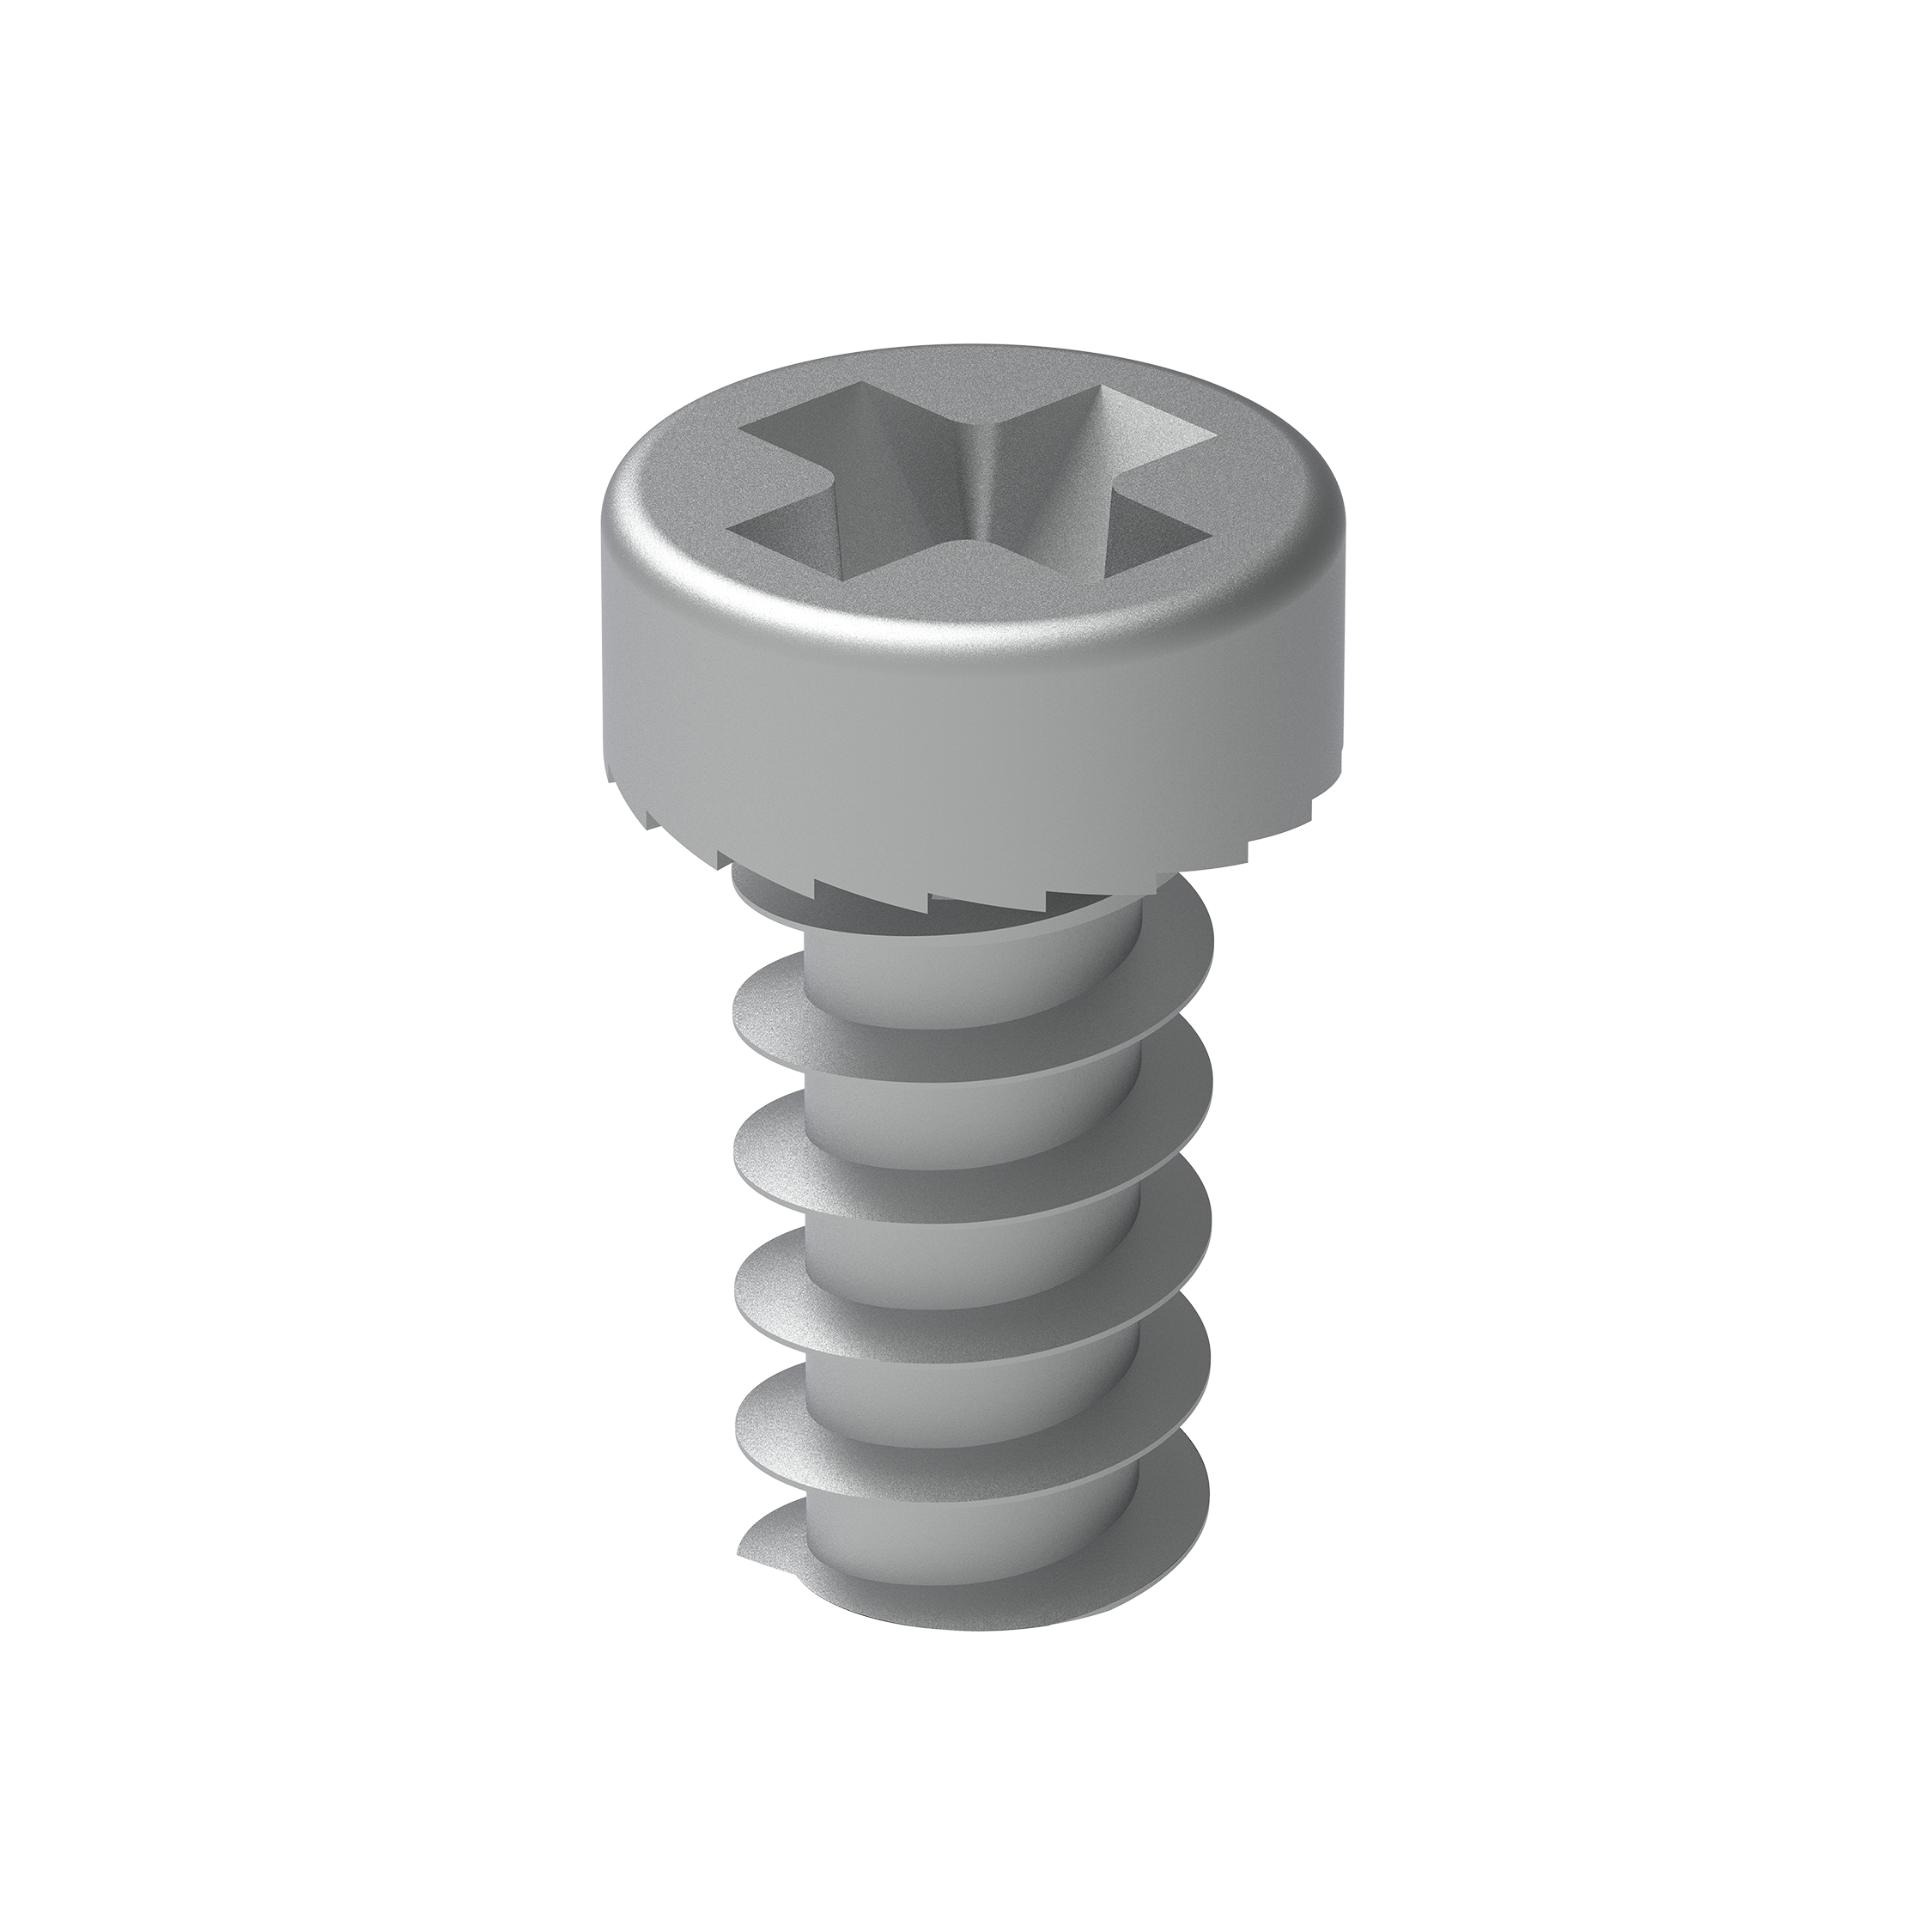 Bindings pan head screws kit 13mm